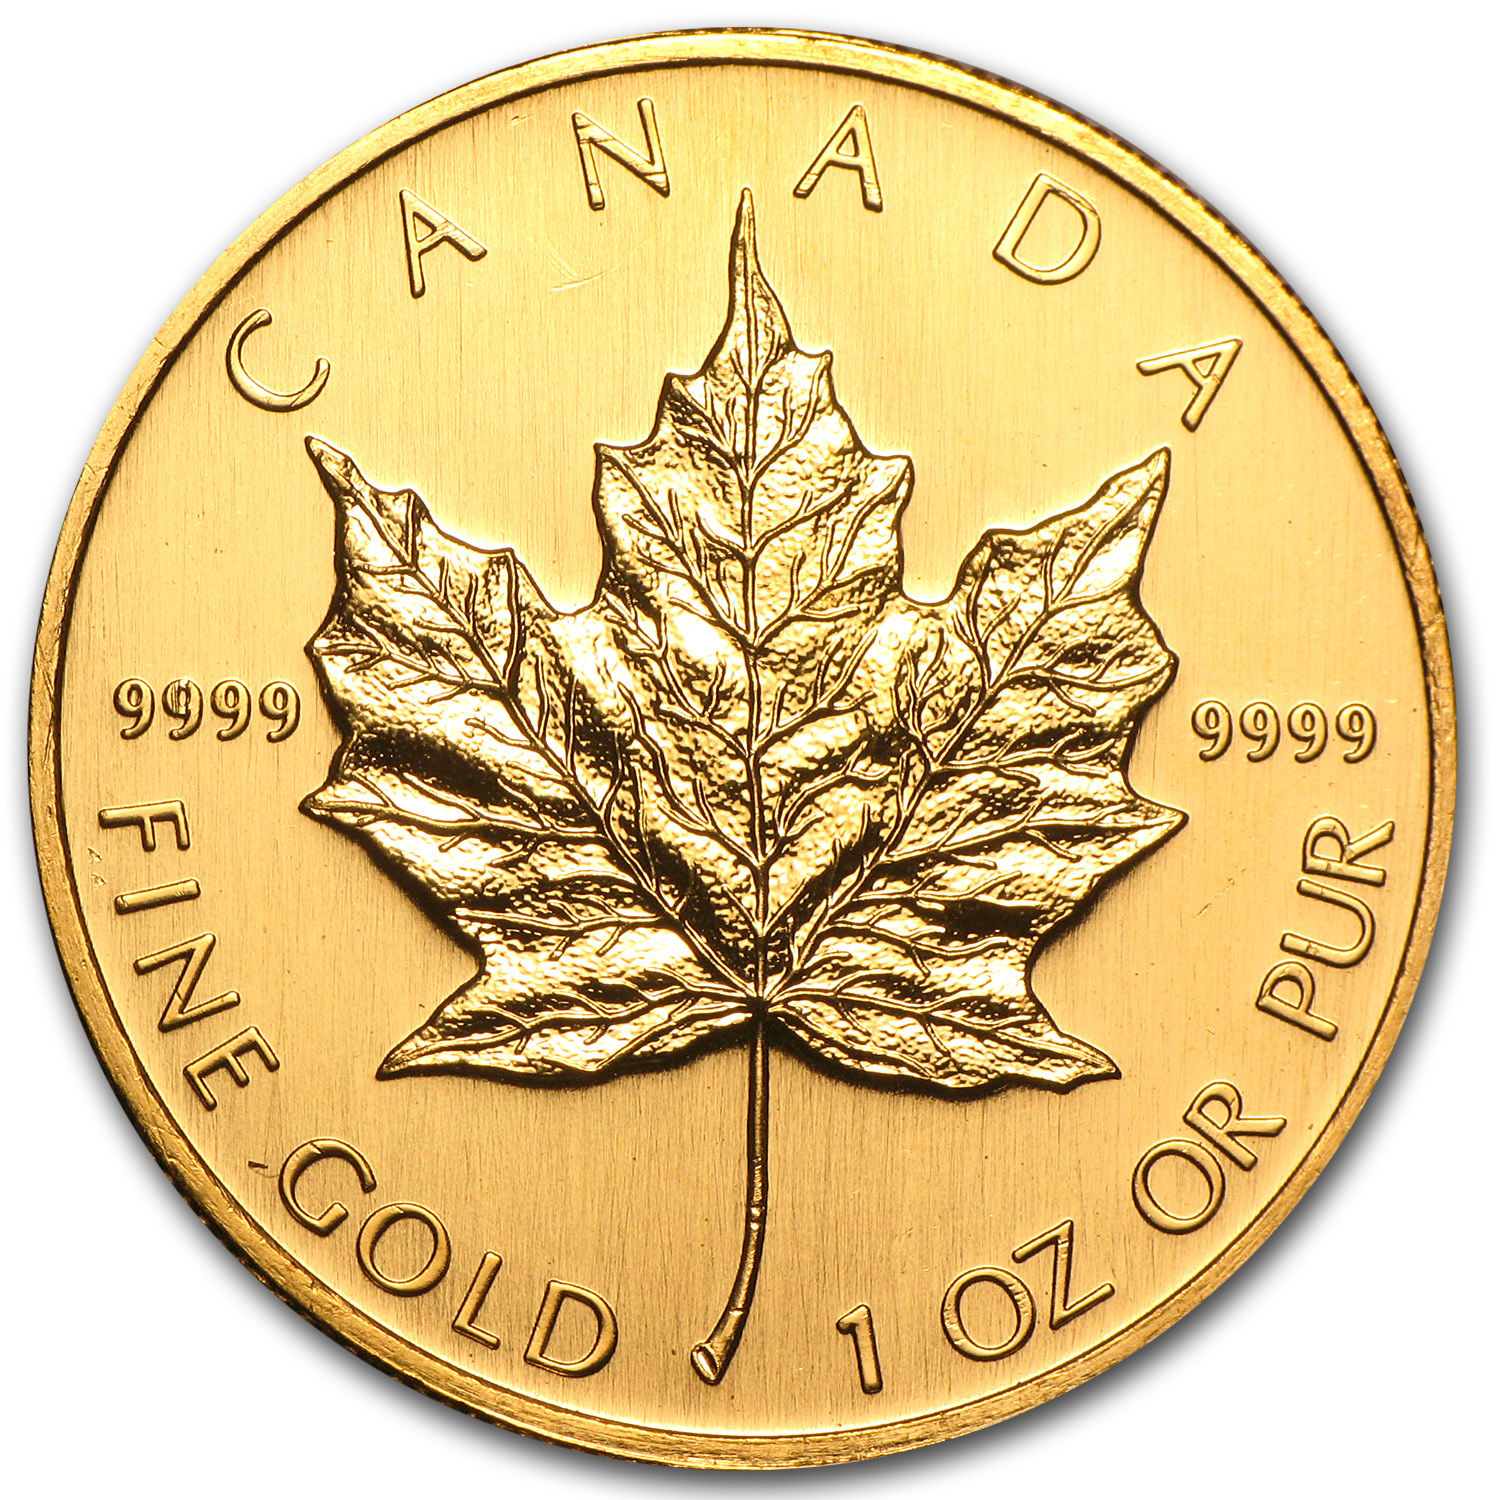 2002 Canada 1 oz Gold Maple Leaf BU - SKU #77414